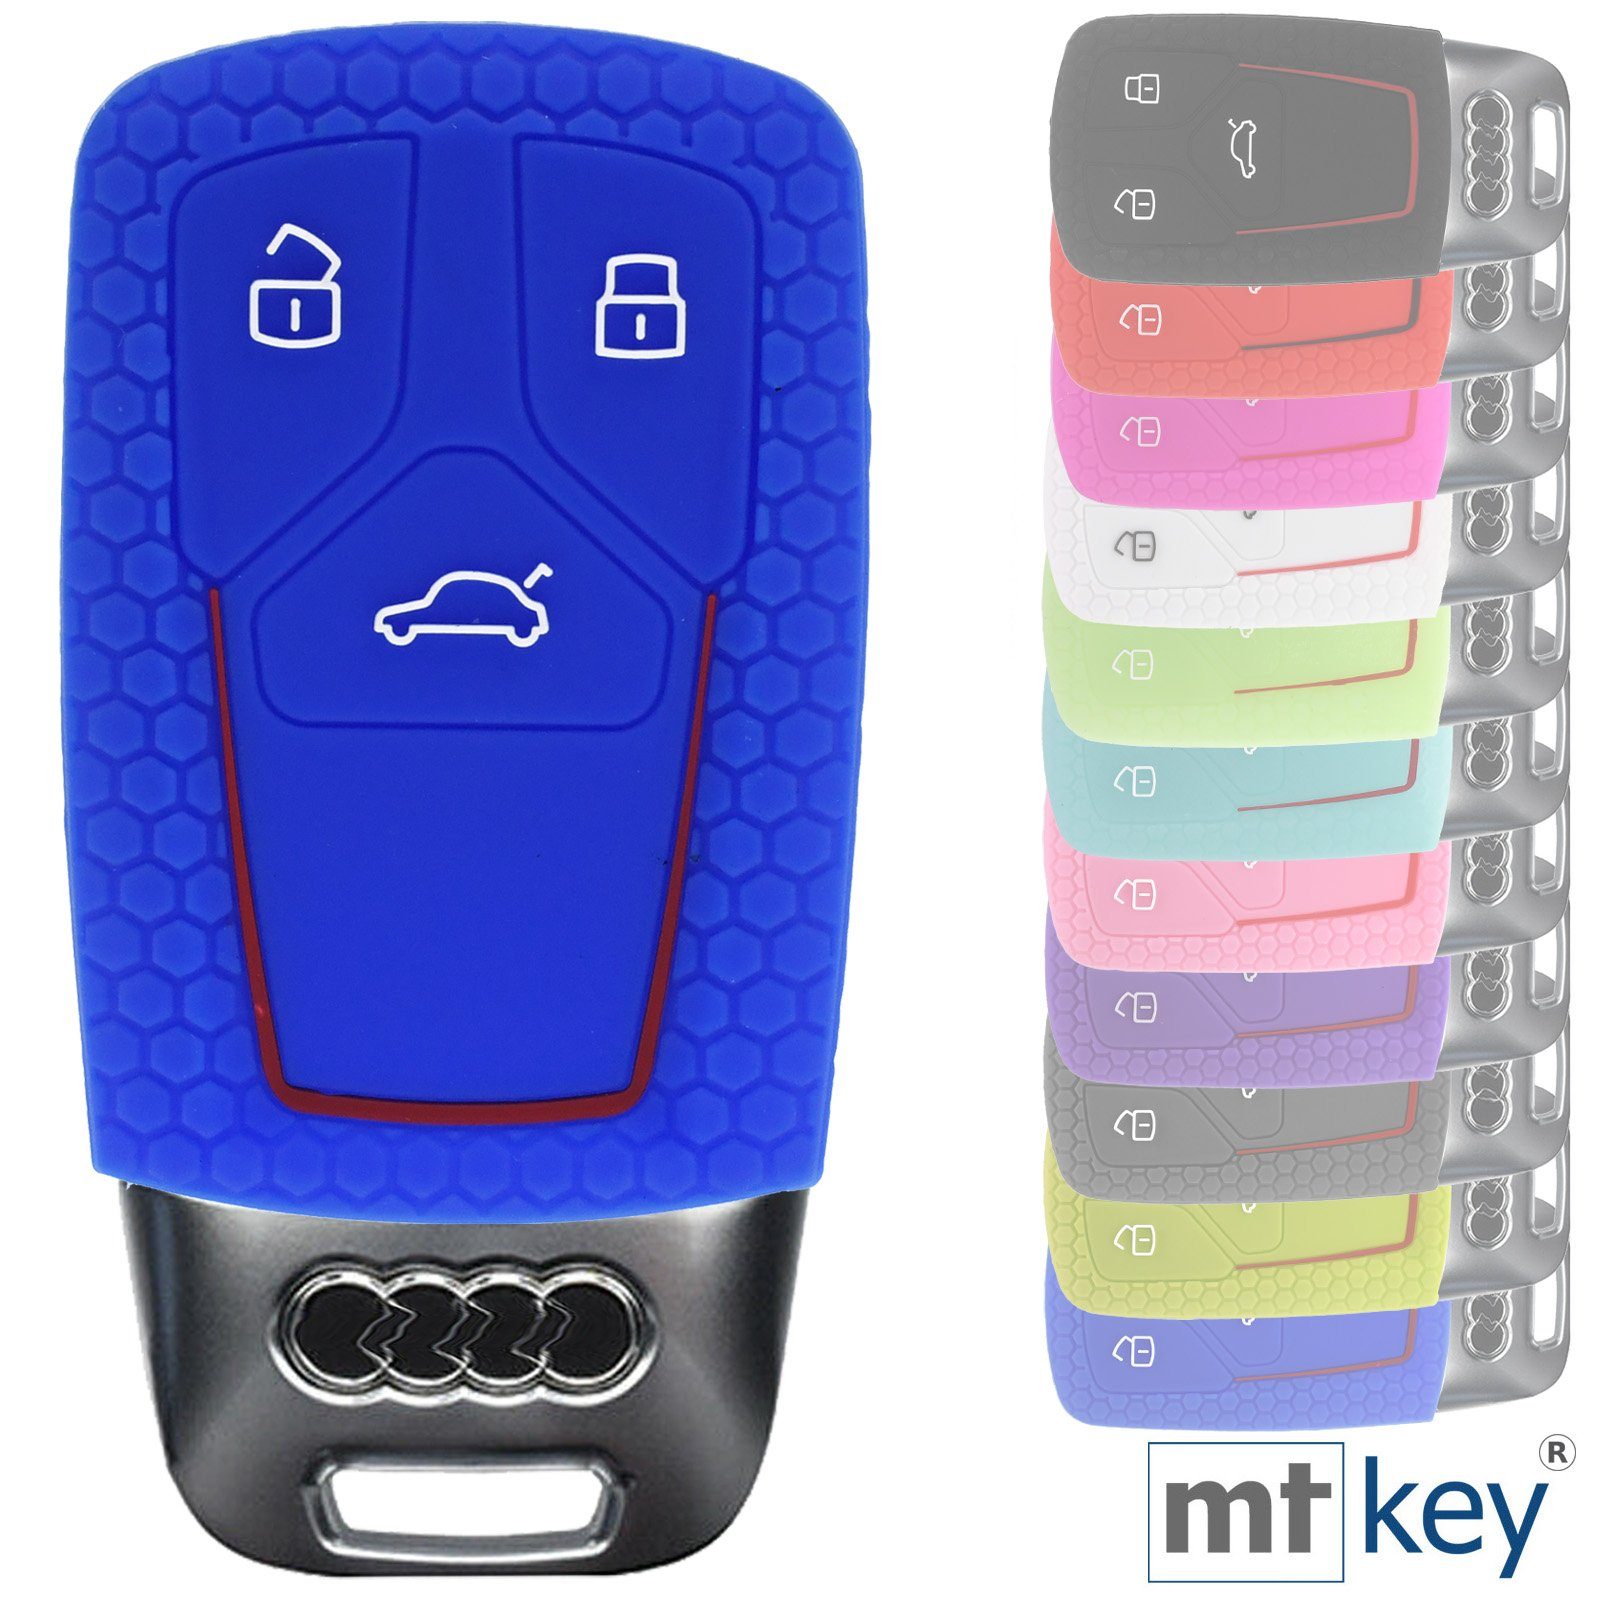 A4 Schutzhülle Silikon A7 Q2 Autoschlüssel A5 Tasten Wabe KEYLESS Blau Q5 + Schlüsselband, Q7 Audi Q8 3 Schlüsseltasche A6 TT im mt-key A8 Design SMARTKEY für